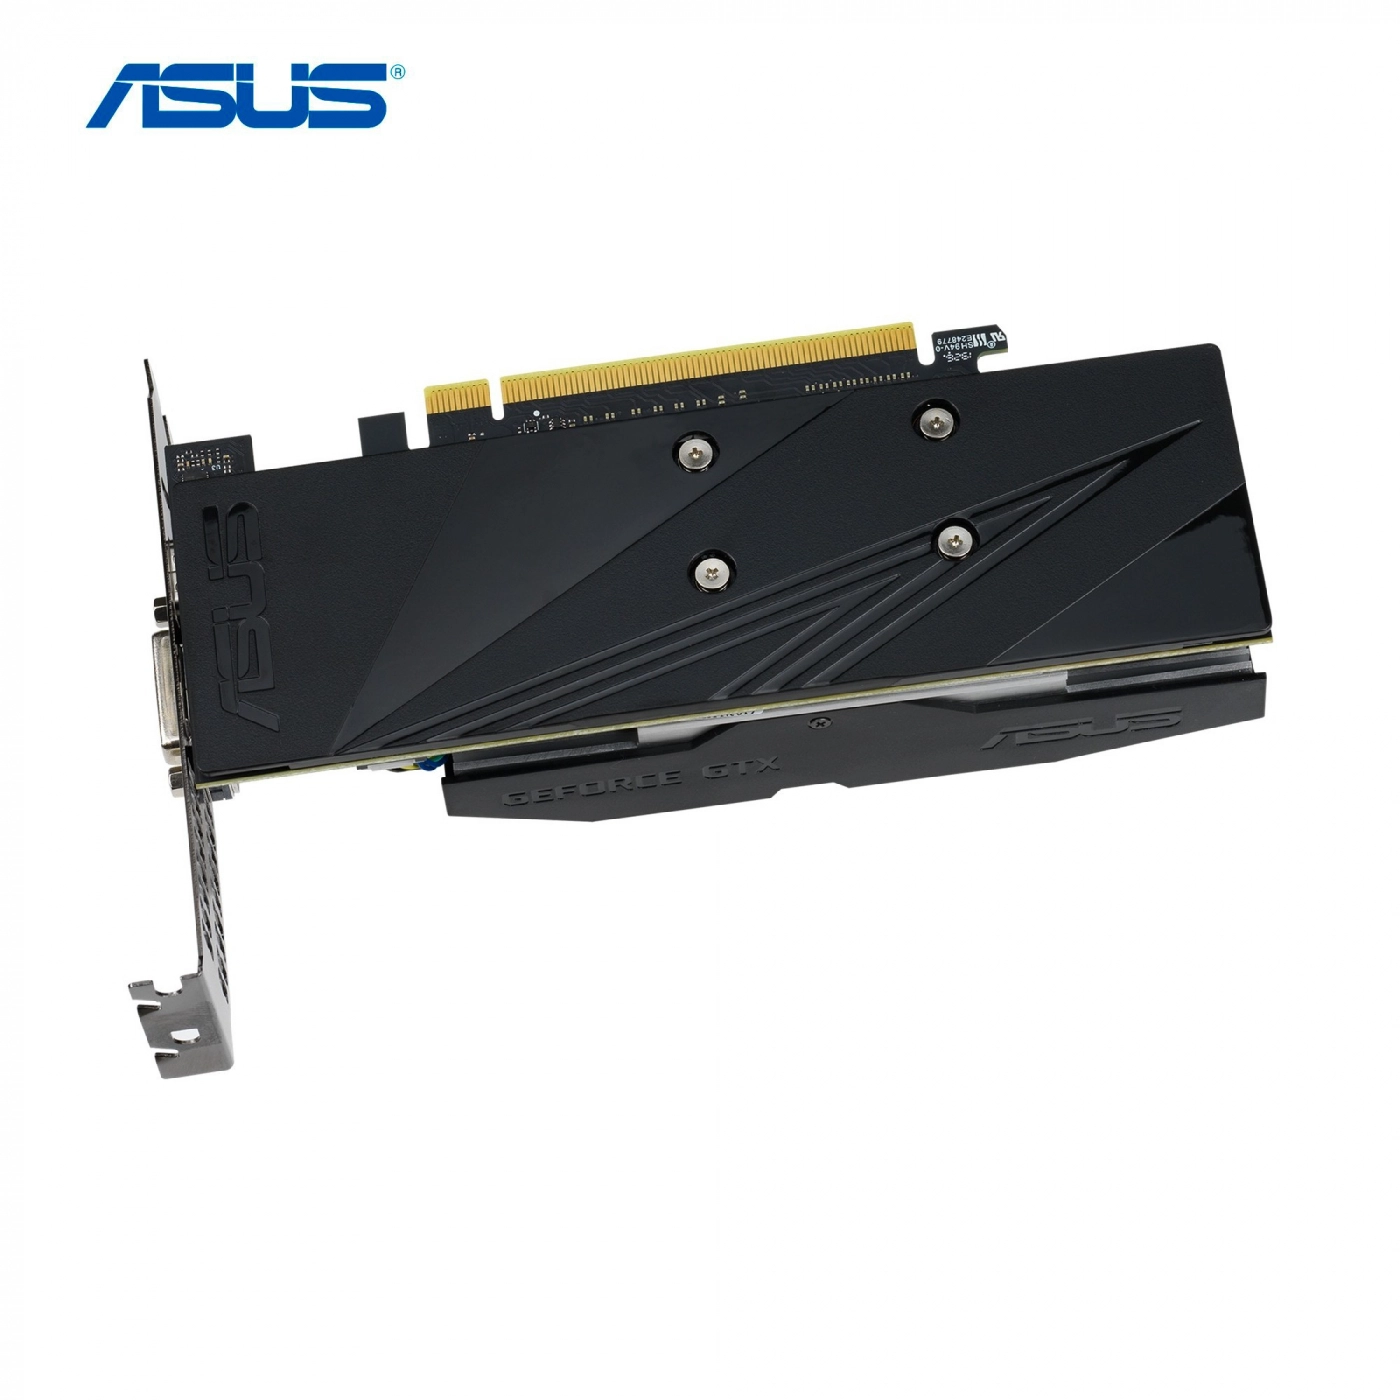 Купить Видеокарта ASUS GeForce GTX 1650 OC edition 4GB GDDR5 - фото 3